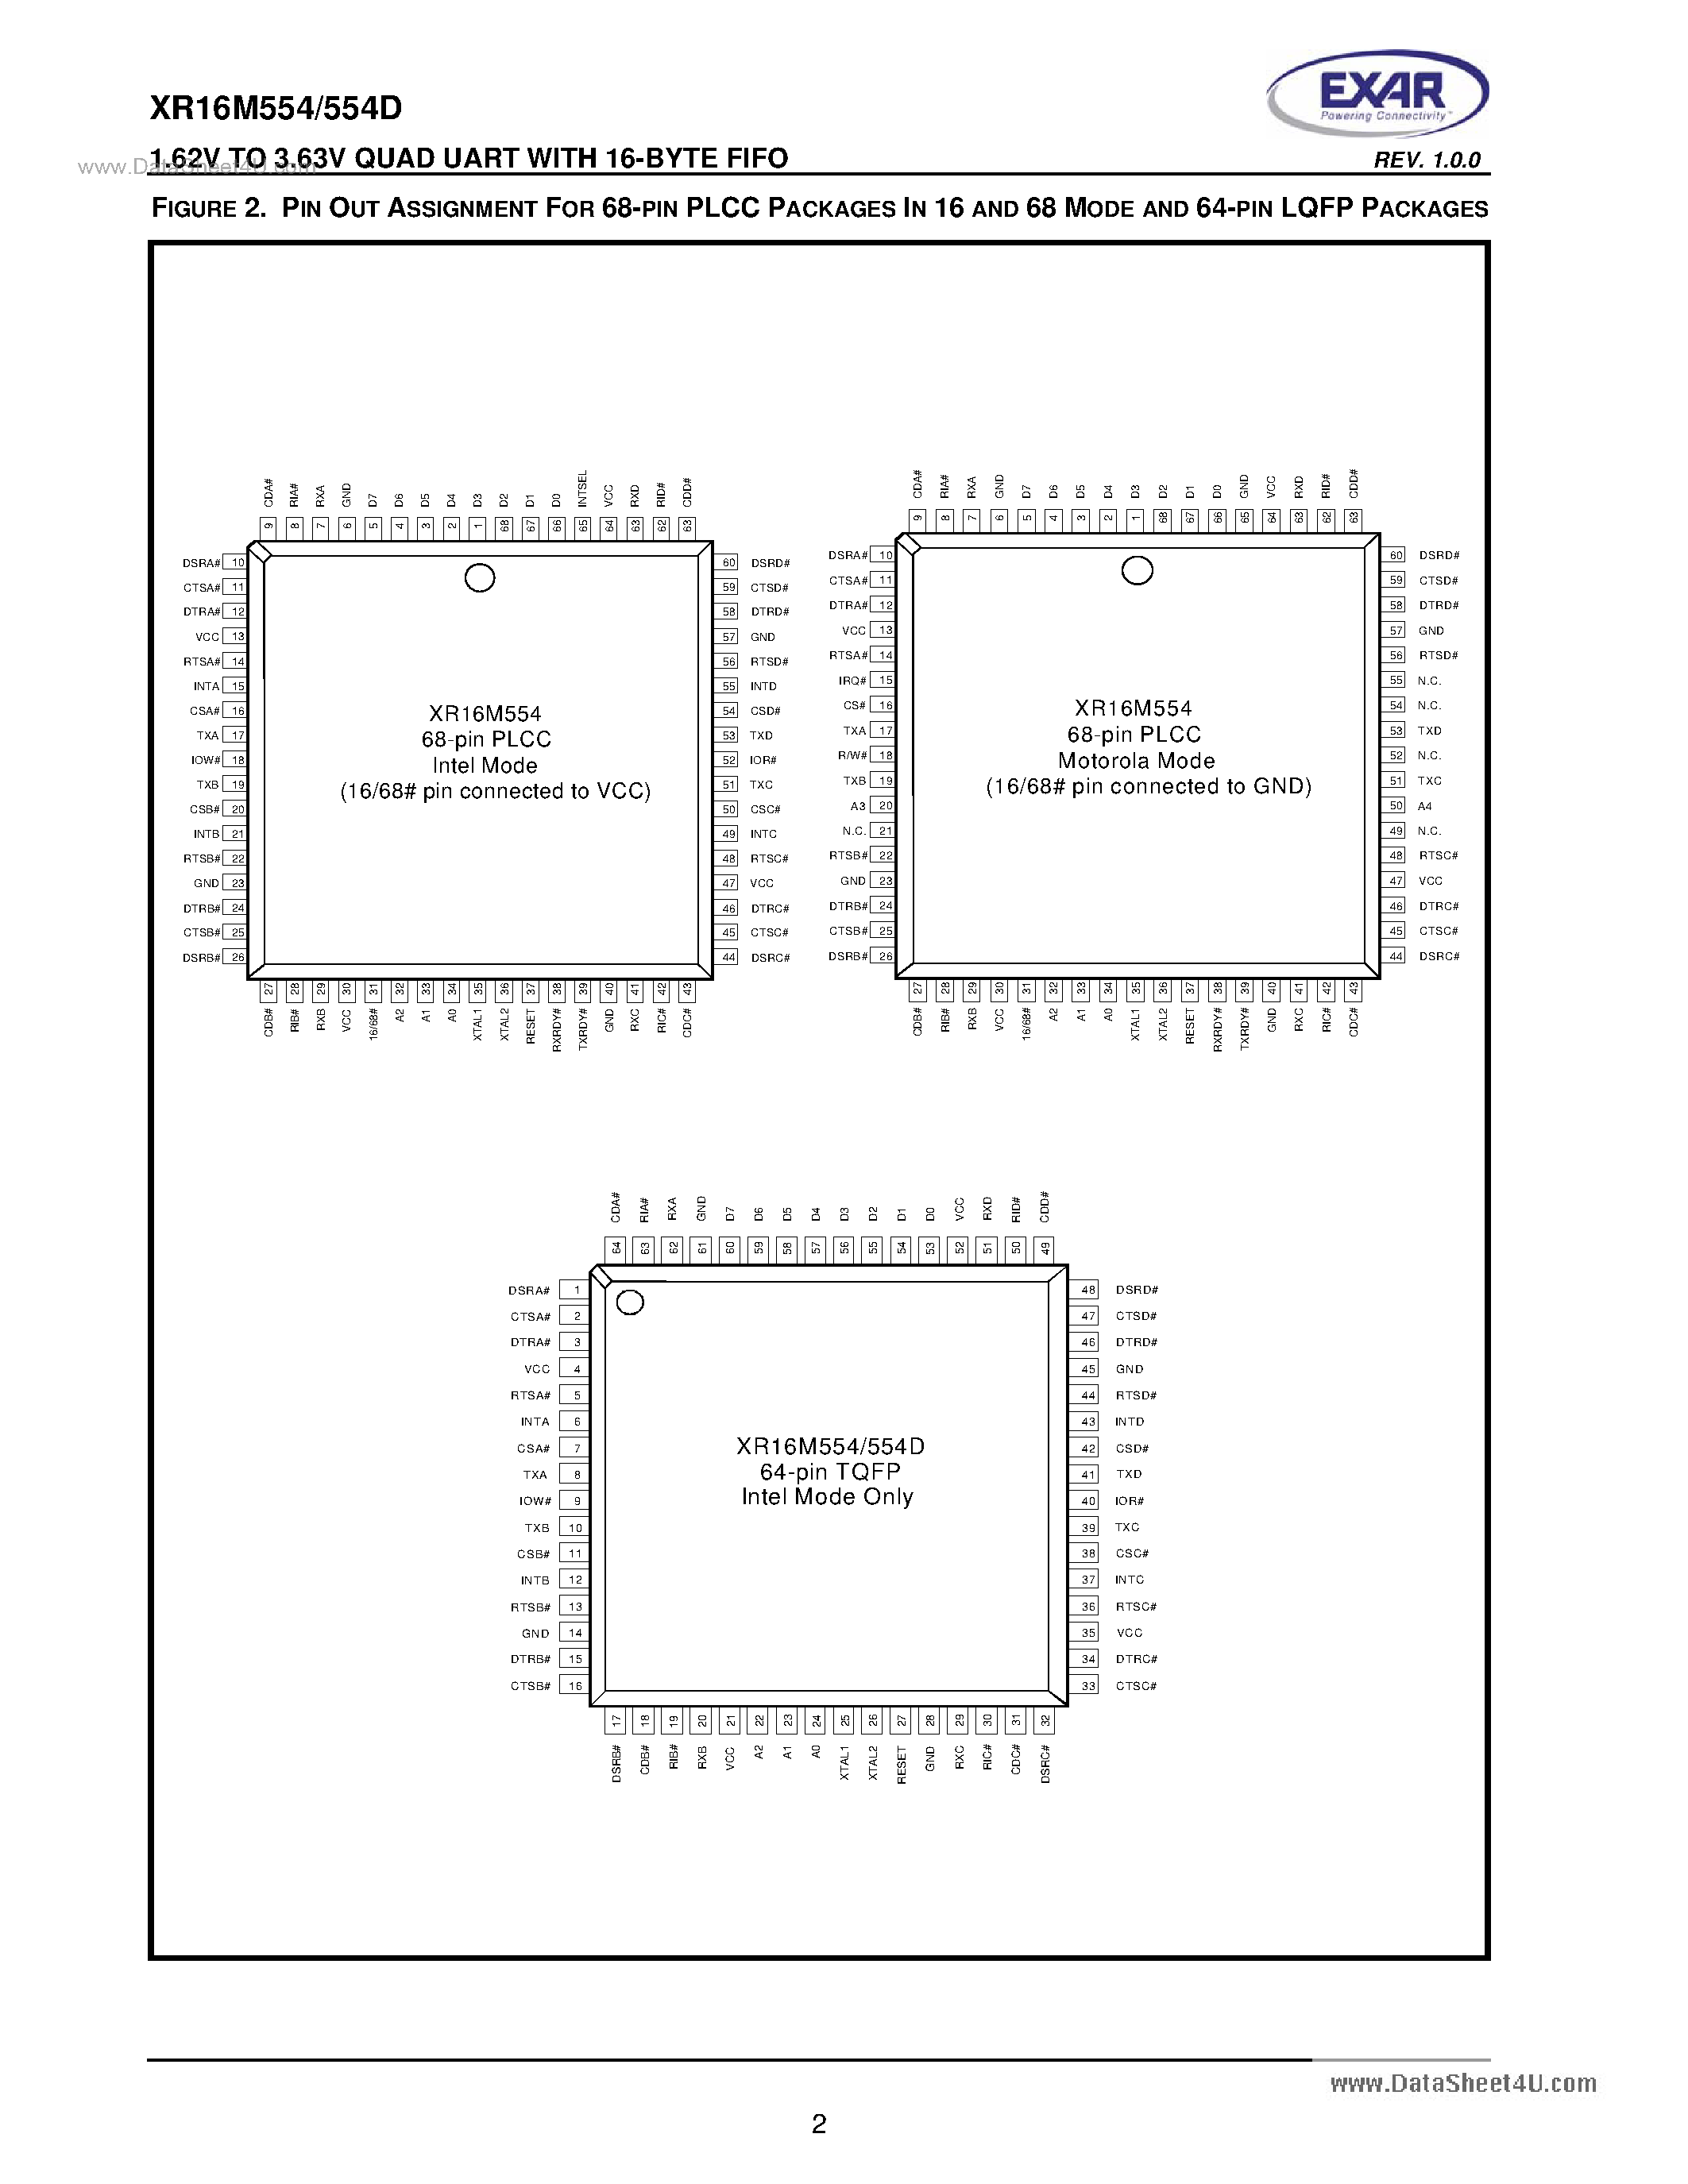 Даташит XR16M554 - 1.62V To 3.63V Quad UART страница 2